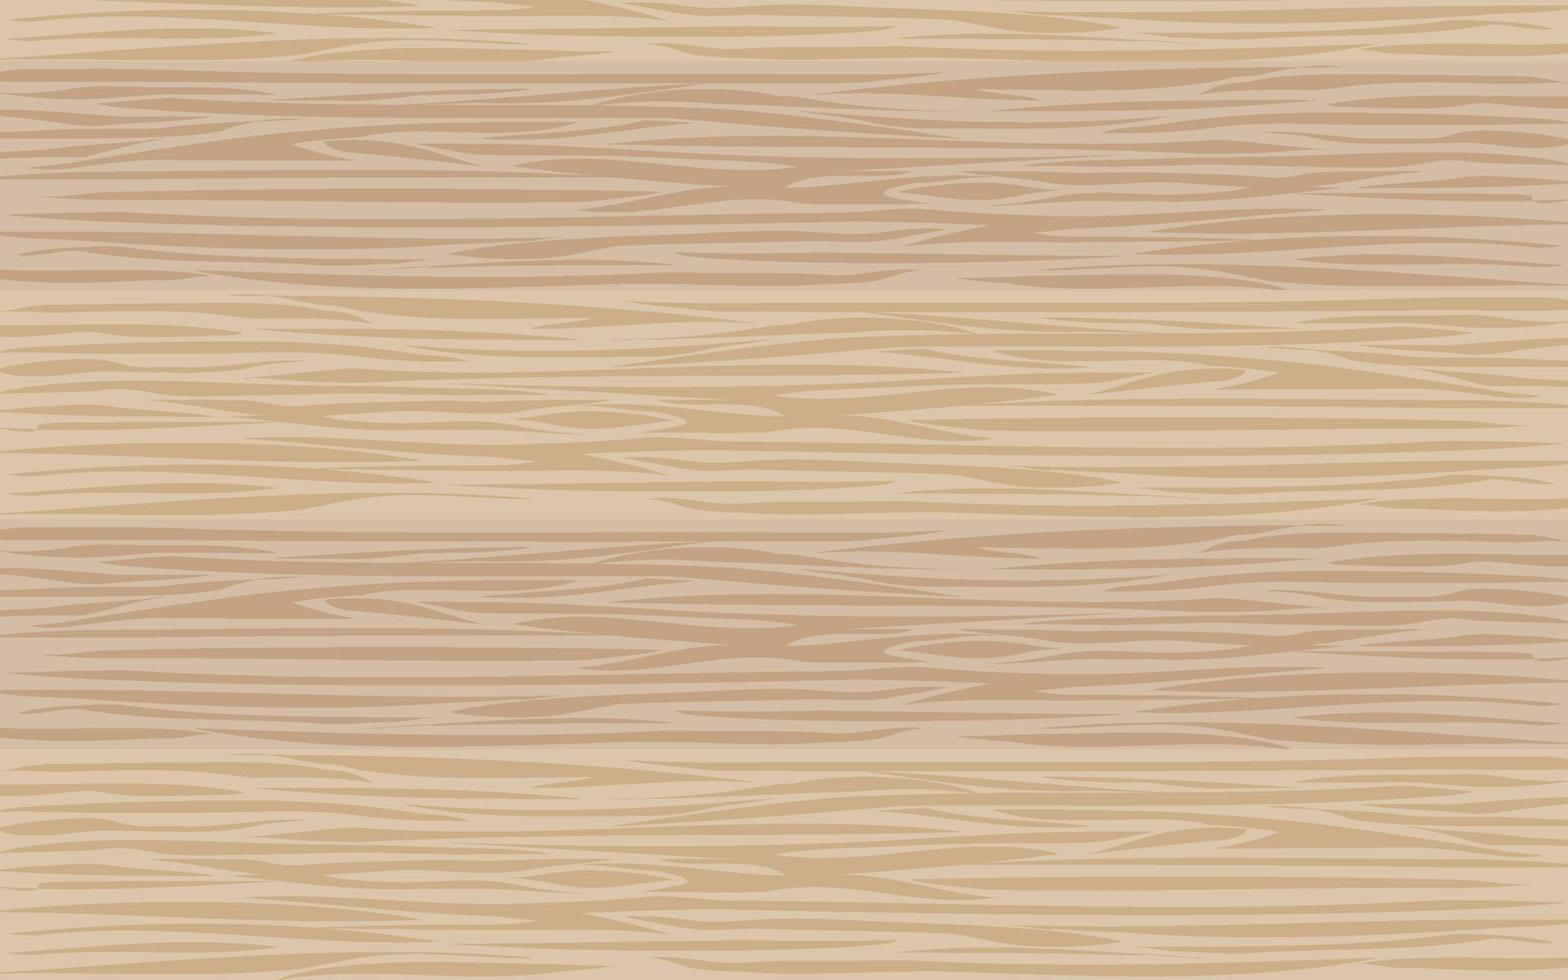 fondo de madera clara. textura de tablones de madera de color marrón claro. vector